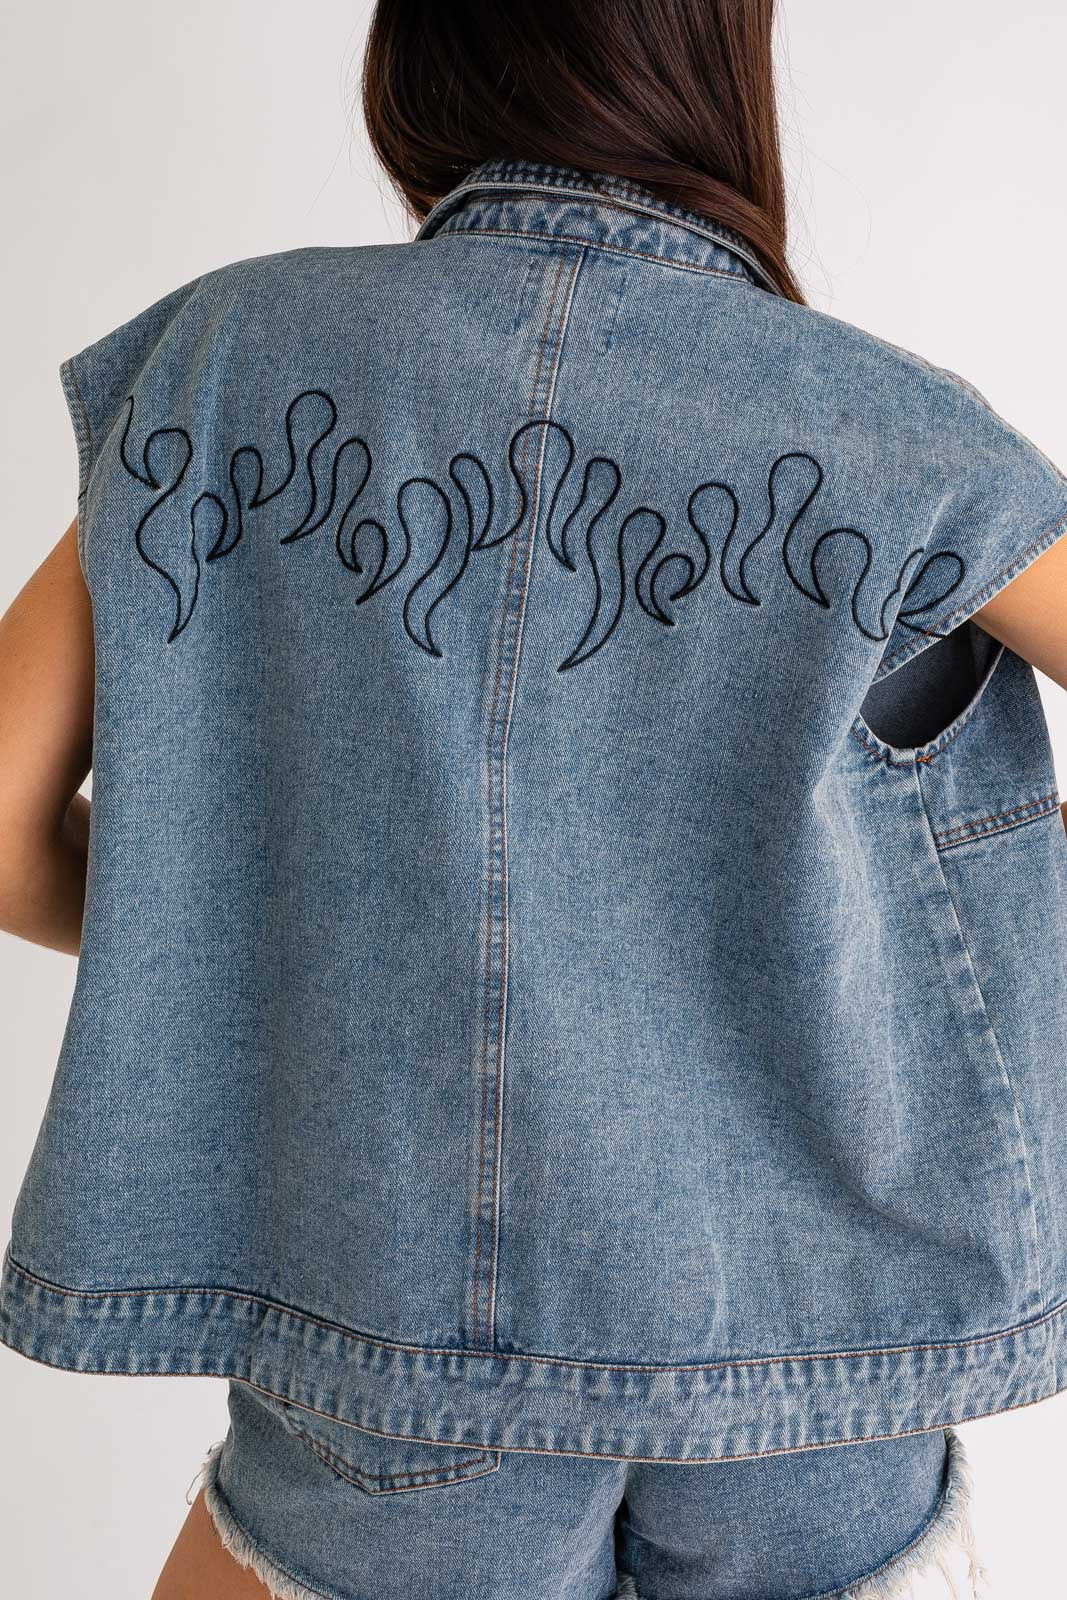 Flames Embroidered Oversized Denim Vest